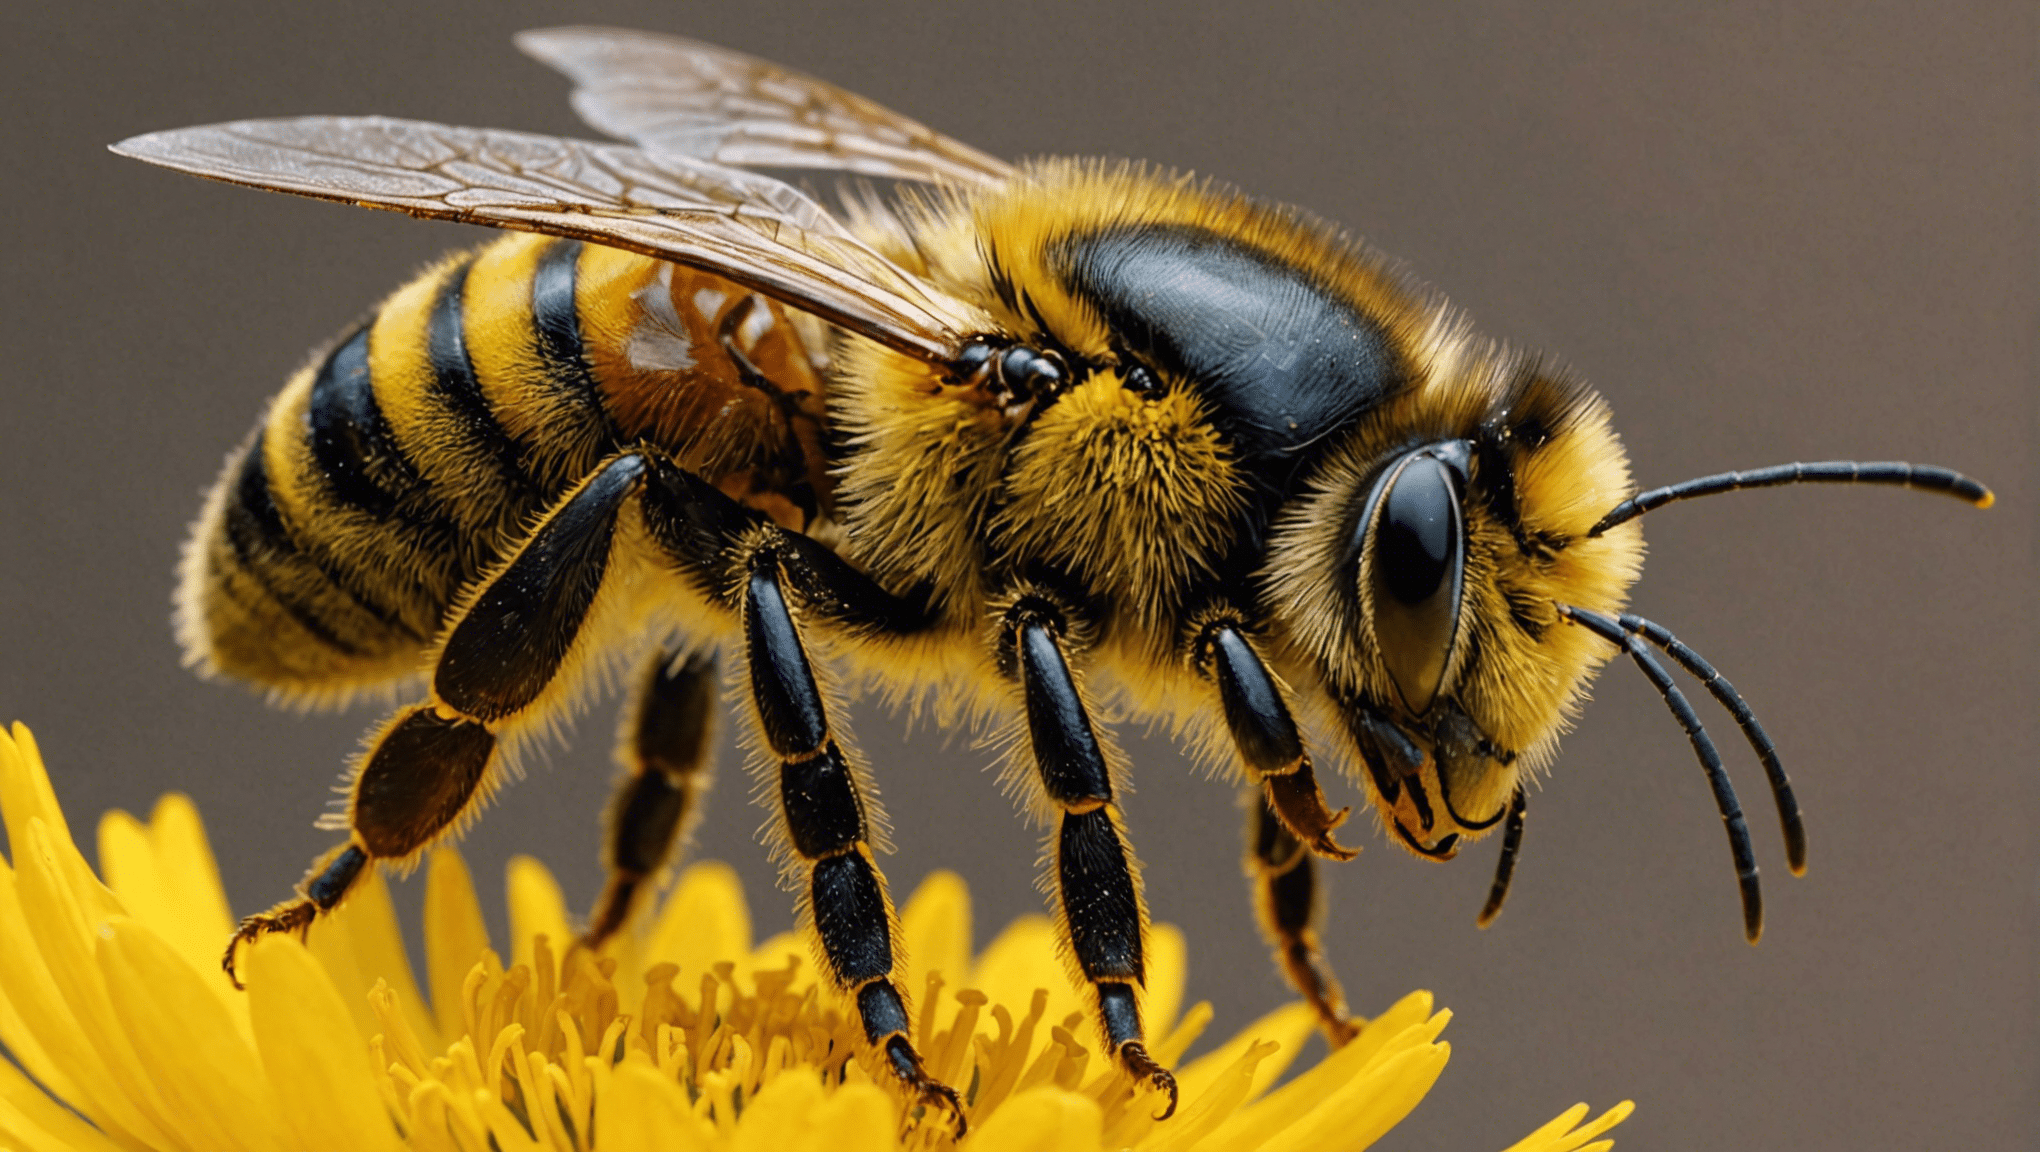 scopri le incredibili proprietà della cera d'api e i suoi usi in questo accattivante articolo.